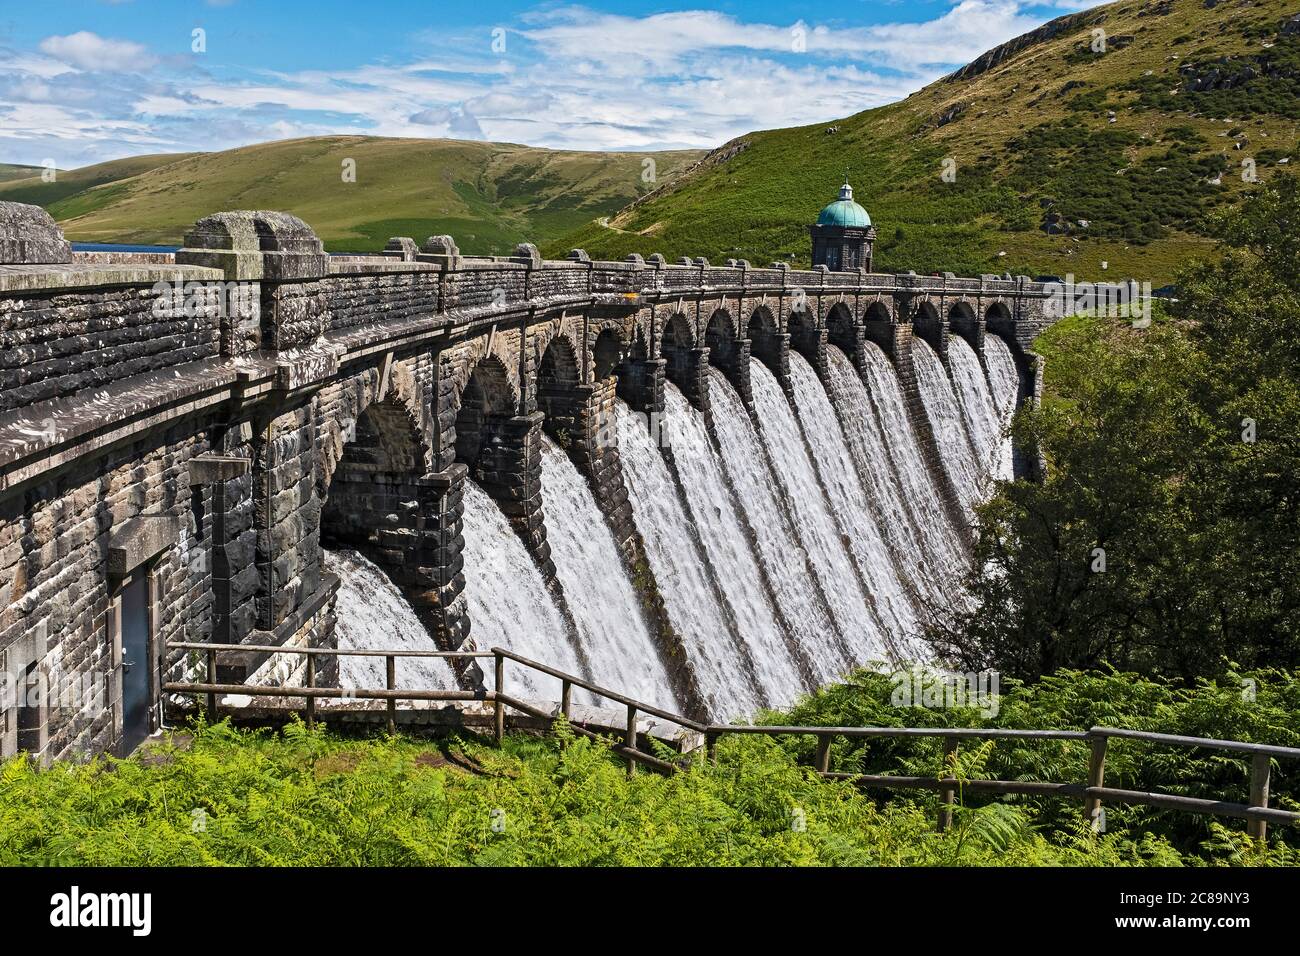 Elan Valley Dams, Powys, Wales, UK Stock Photo